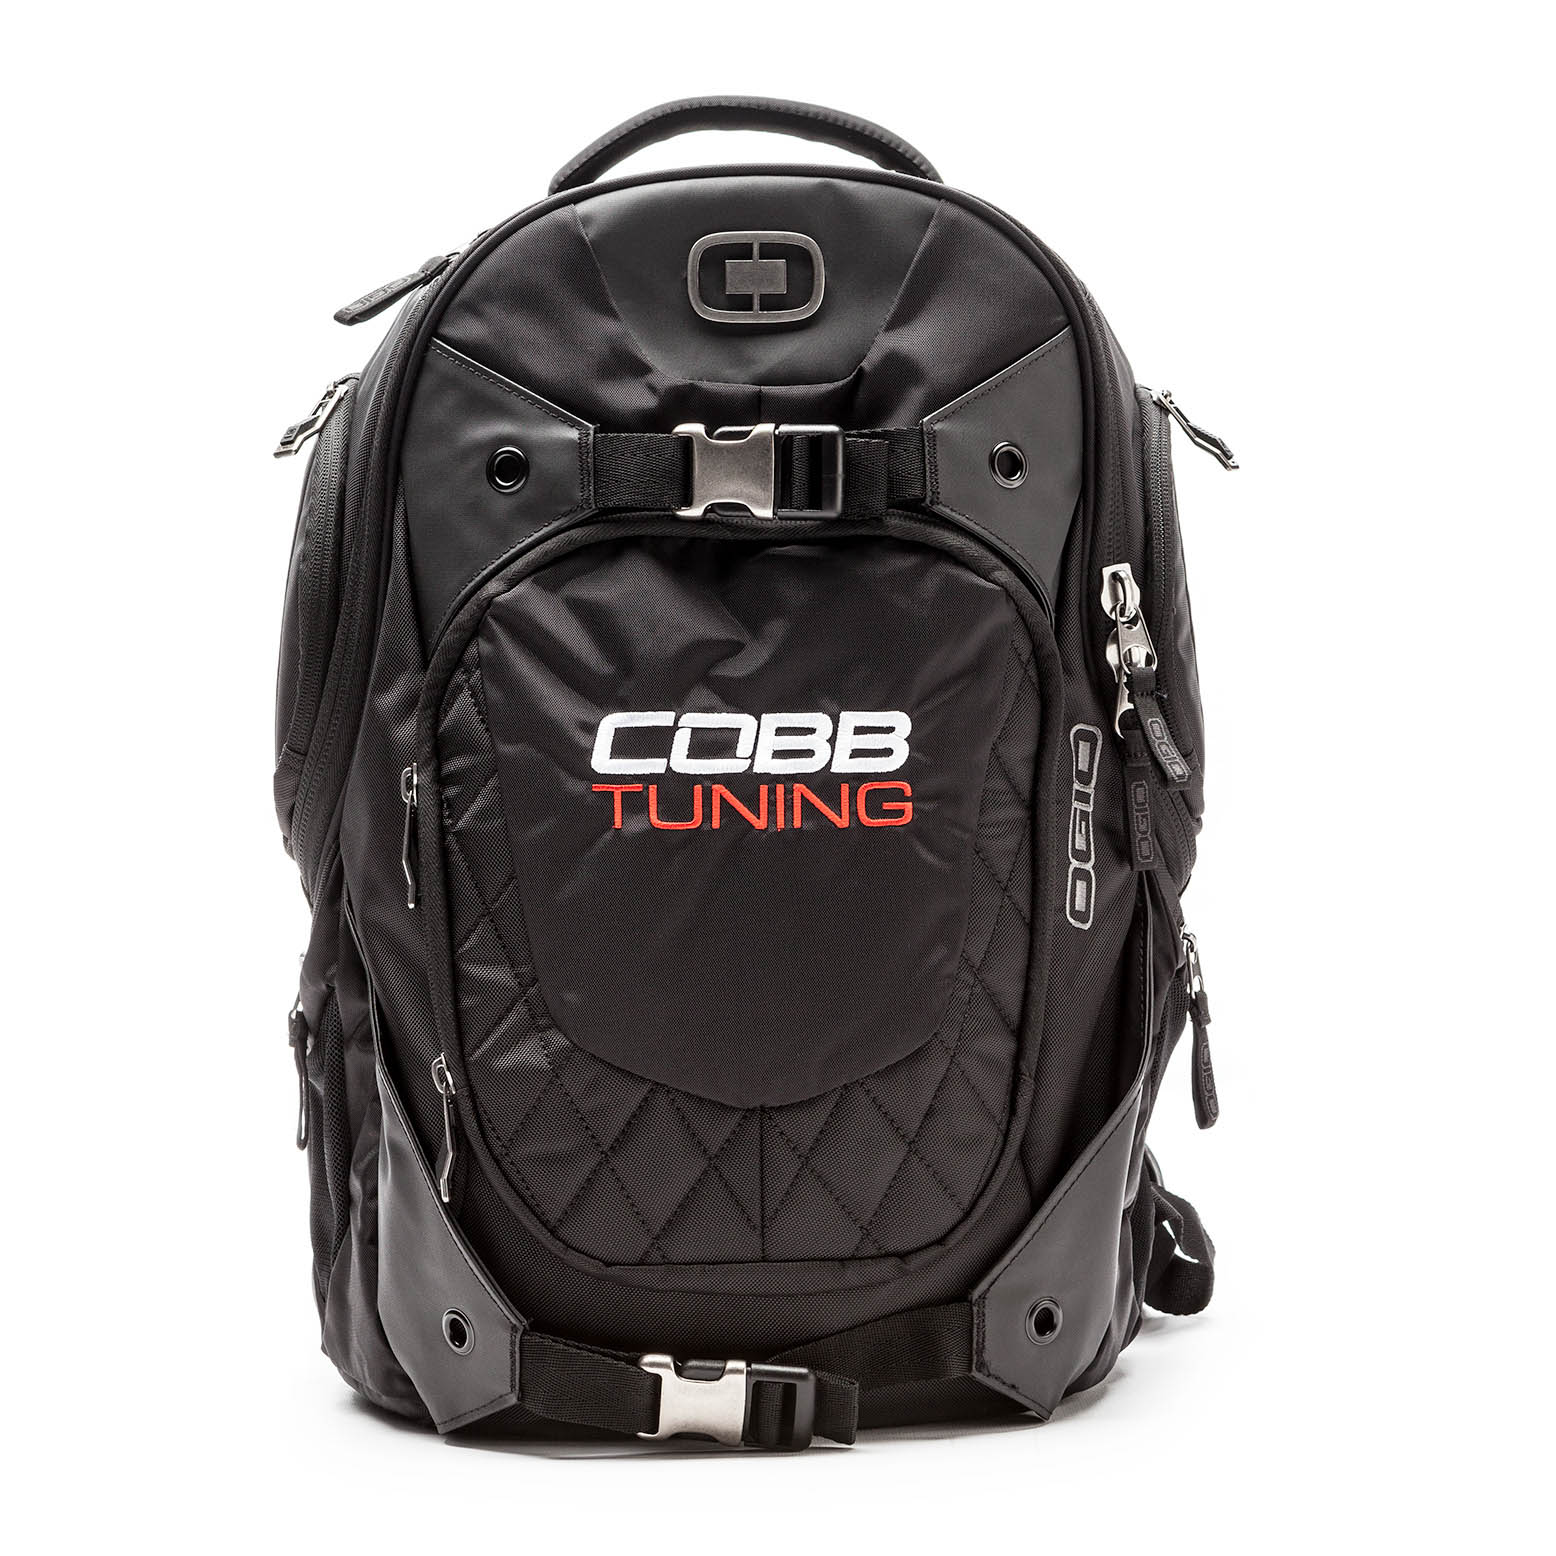 COBB Squad Backpack